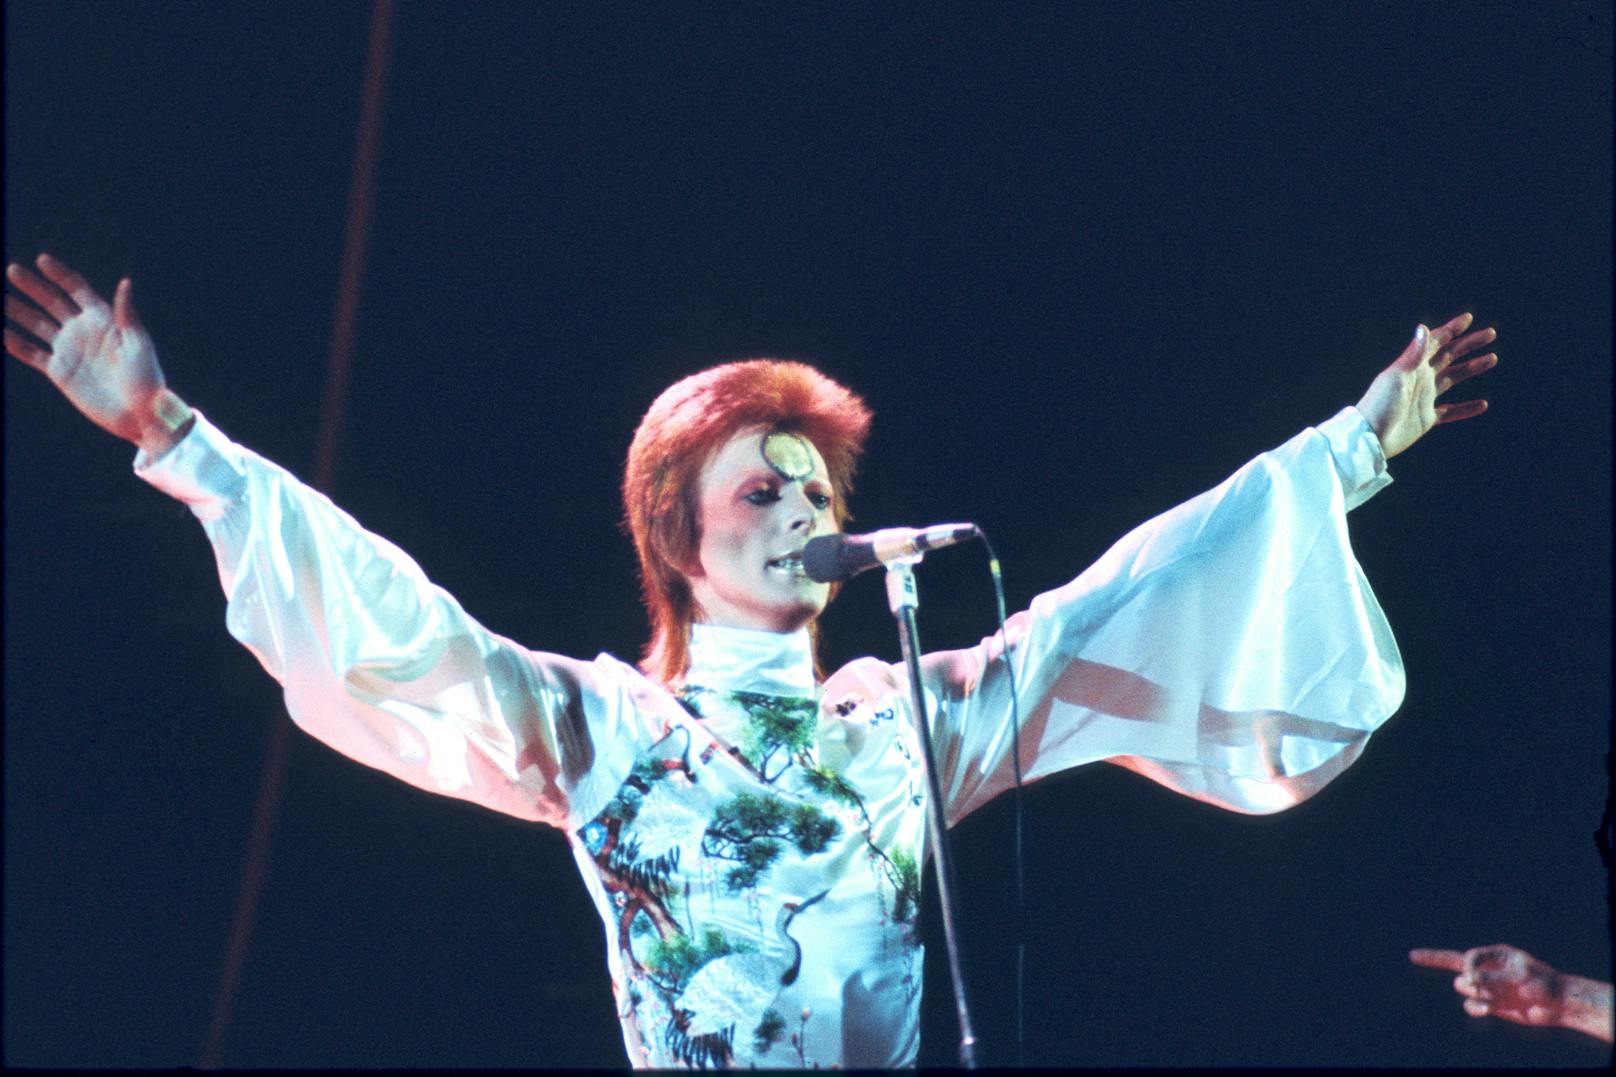 David Bowie auf der Bühne als Alter Ego Ziggy Stardust im Jahre 1973.